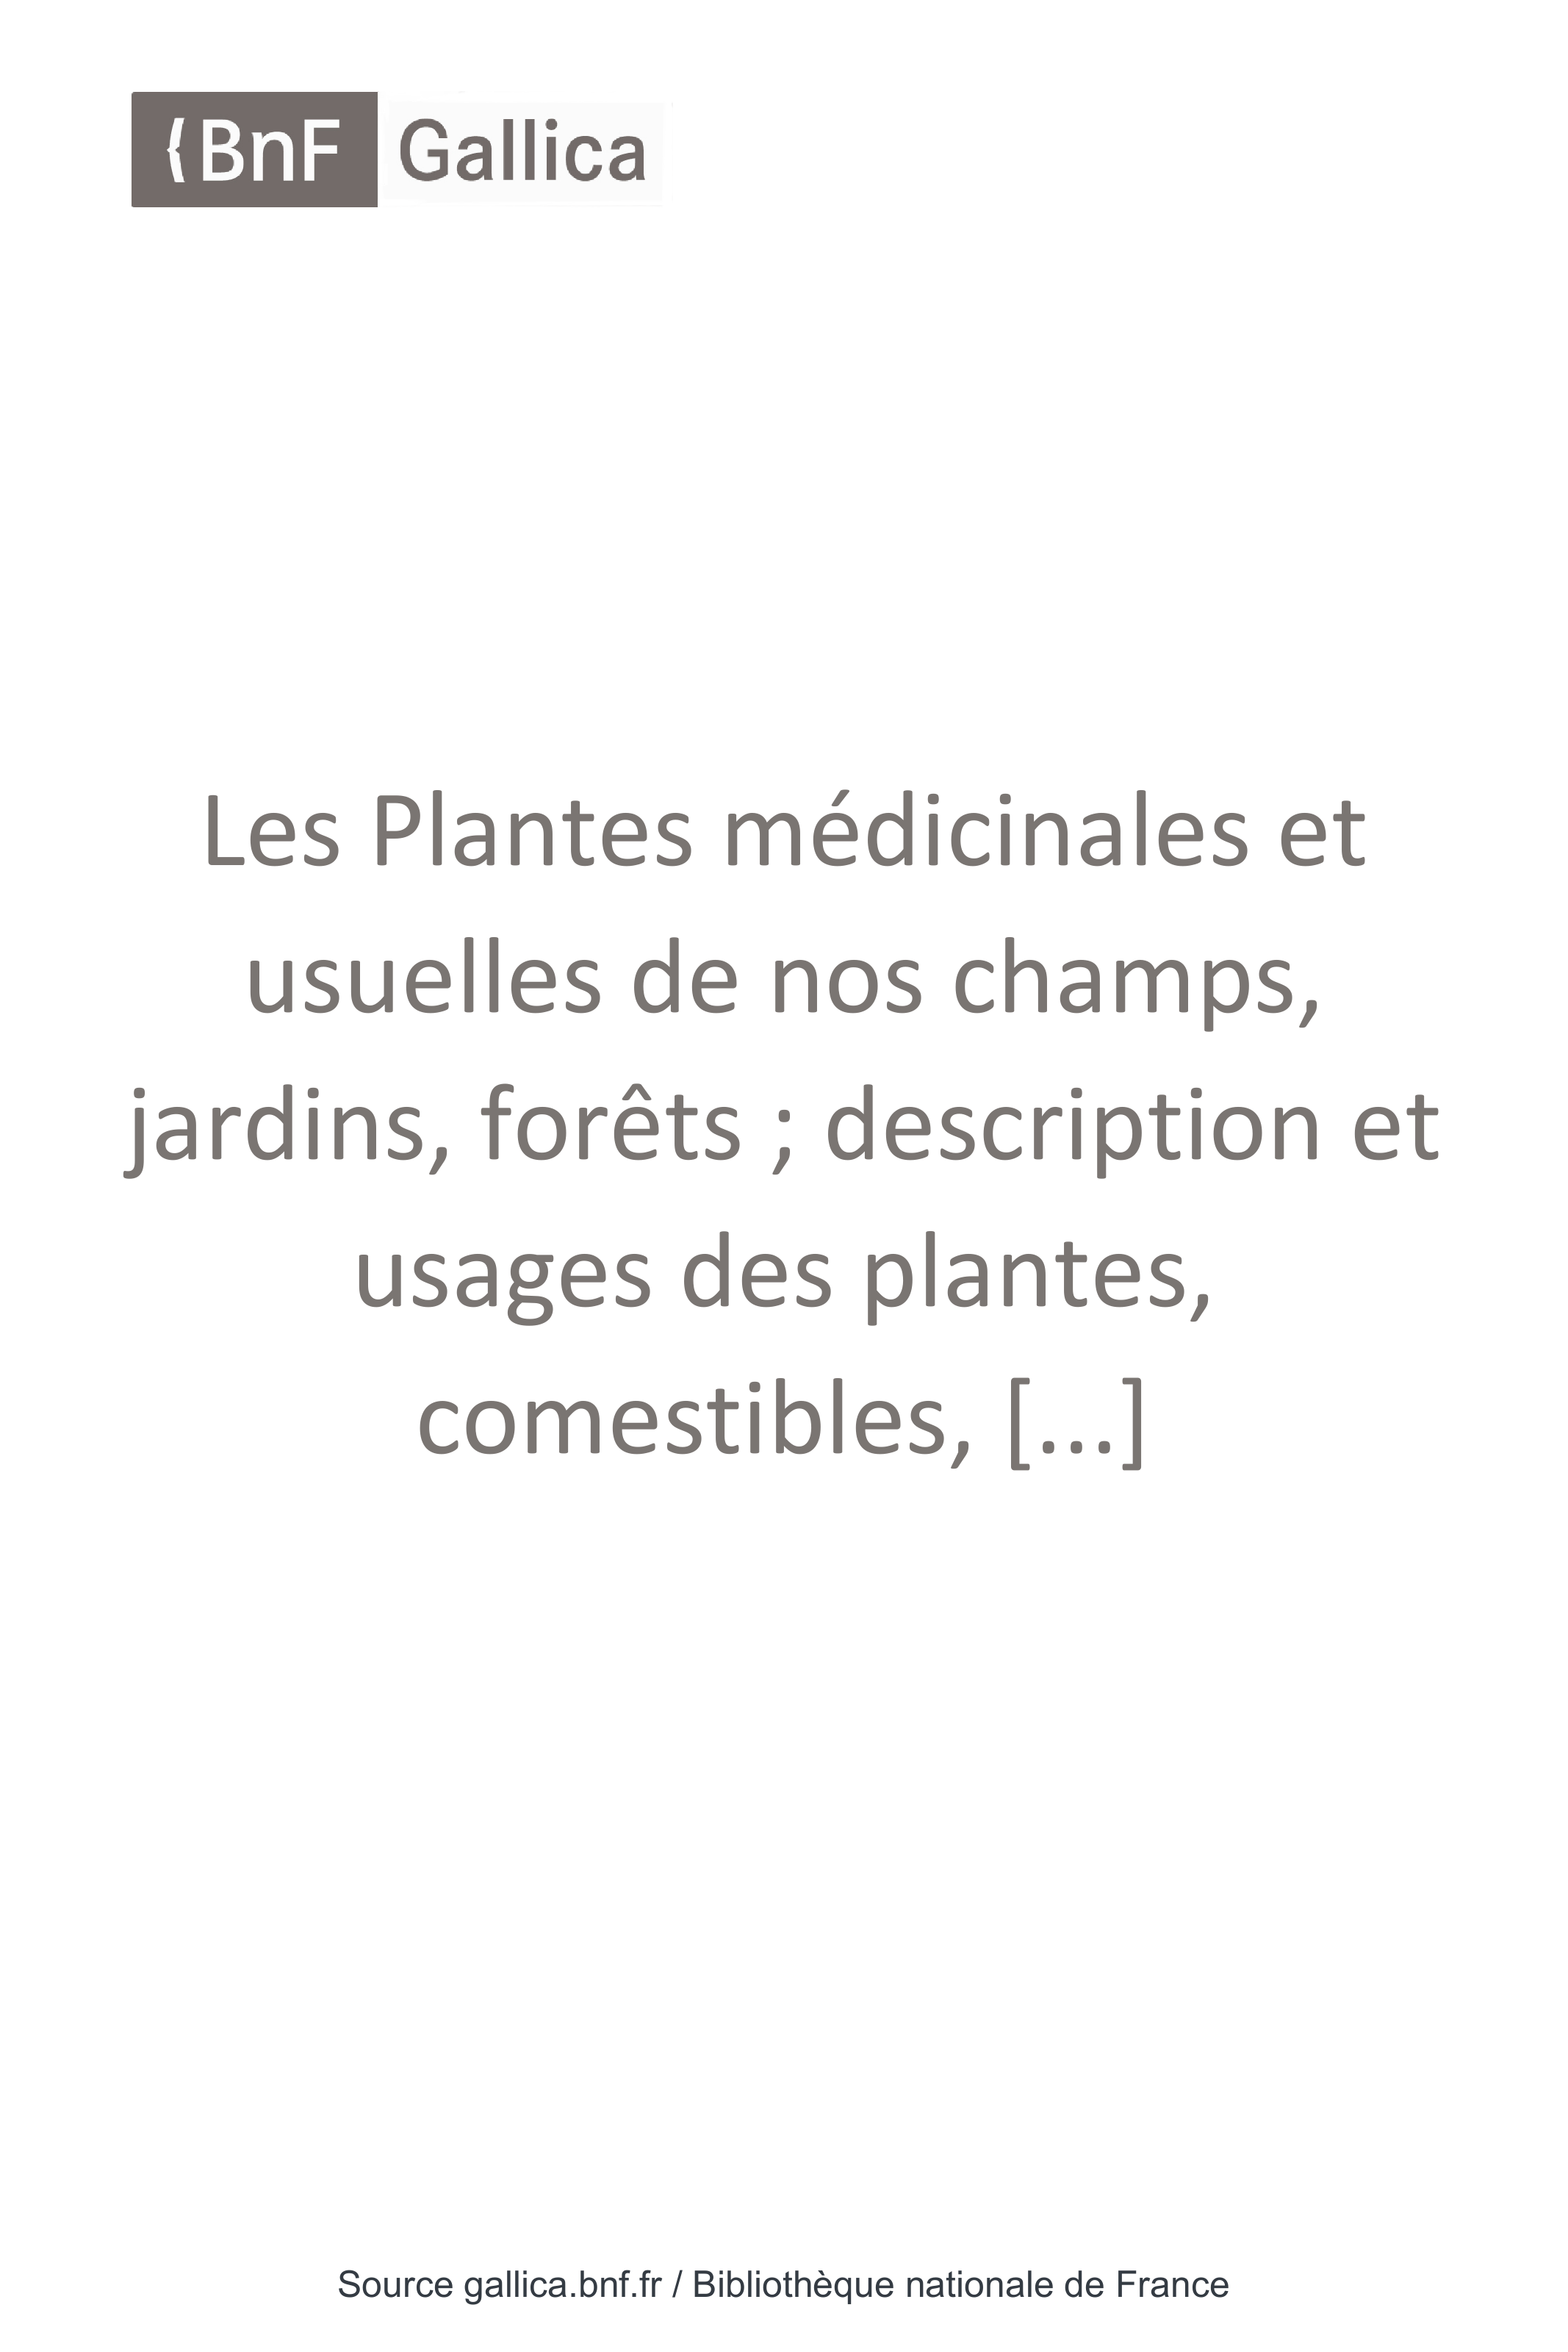 Blatte De Jardin Charmant Les Plantes Médicinales Et Usuelles De Nos Champs Usages